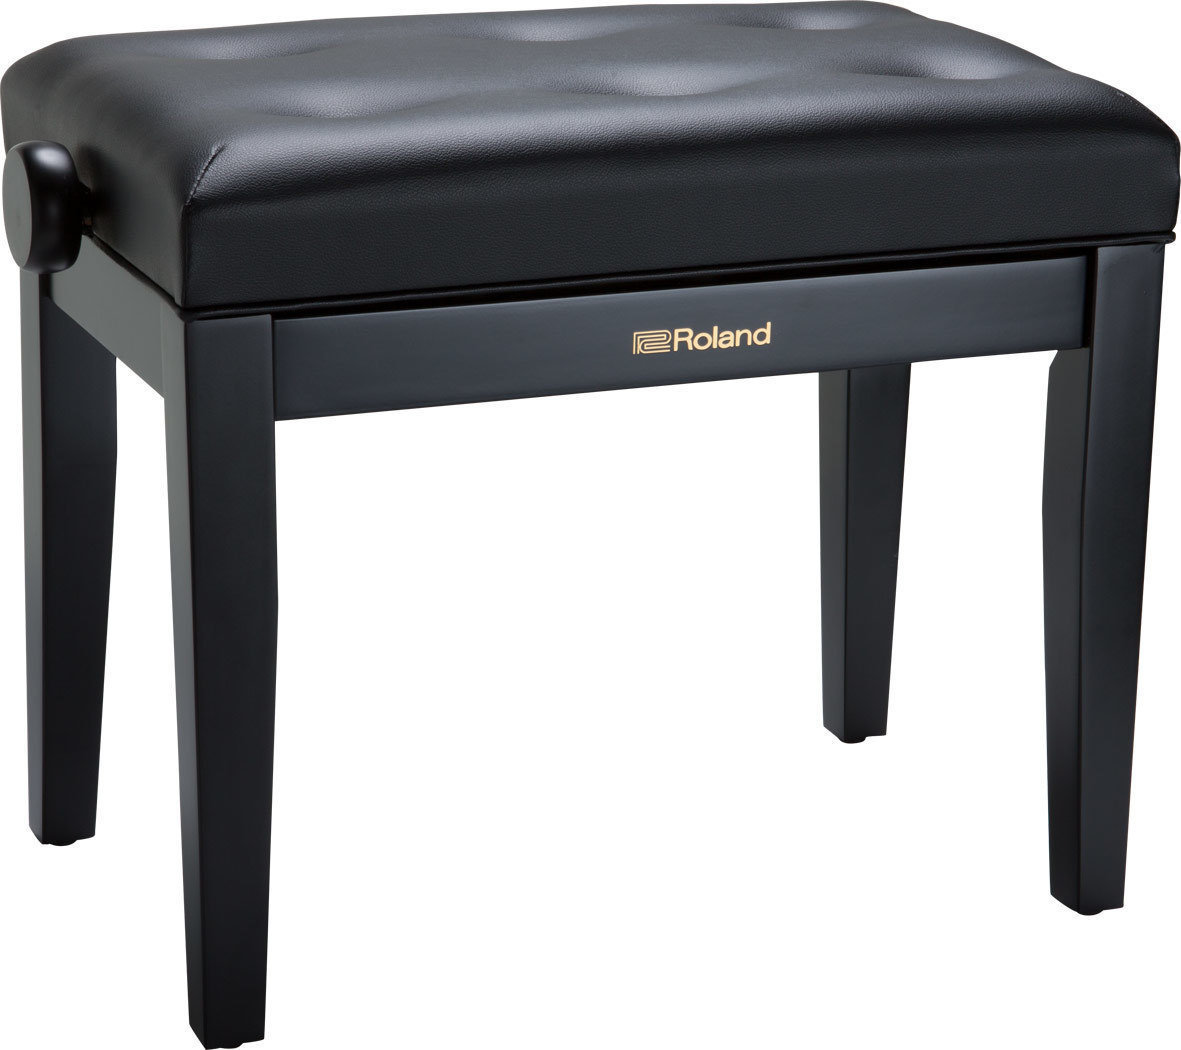 Wooden or classic piano stools
 Roland RPB-300BK-EU Black